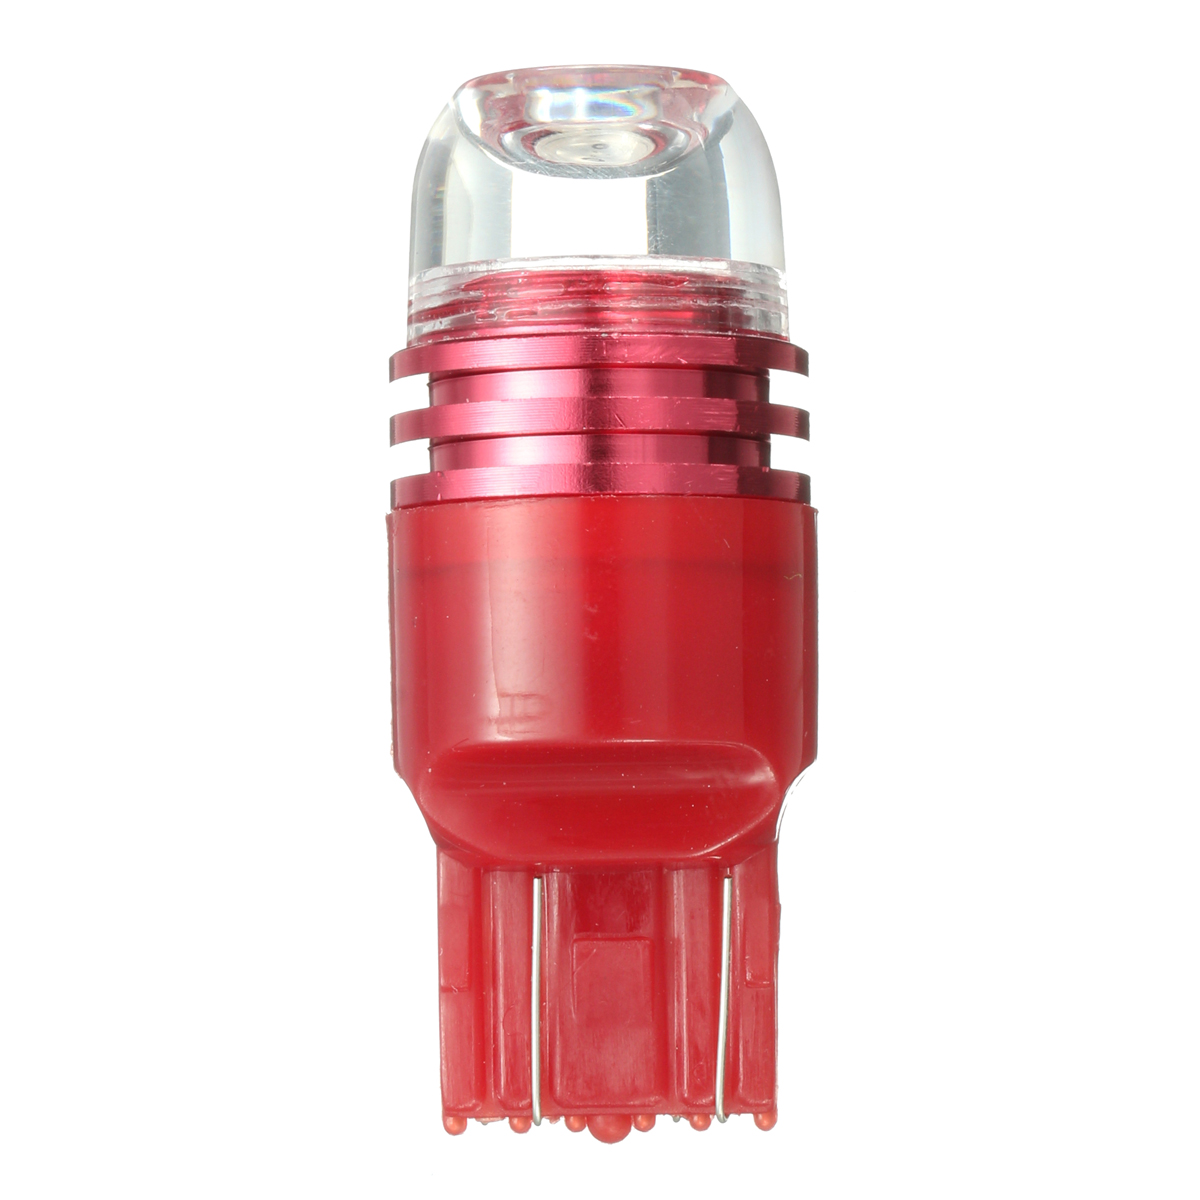 

T20 7443 12V Red LED Car Rear Tail Brake Stop Lights Strobe Flashing Bulb 1PCS